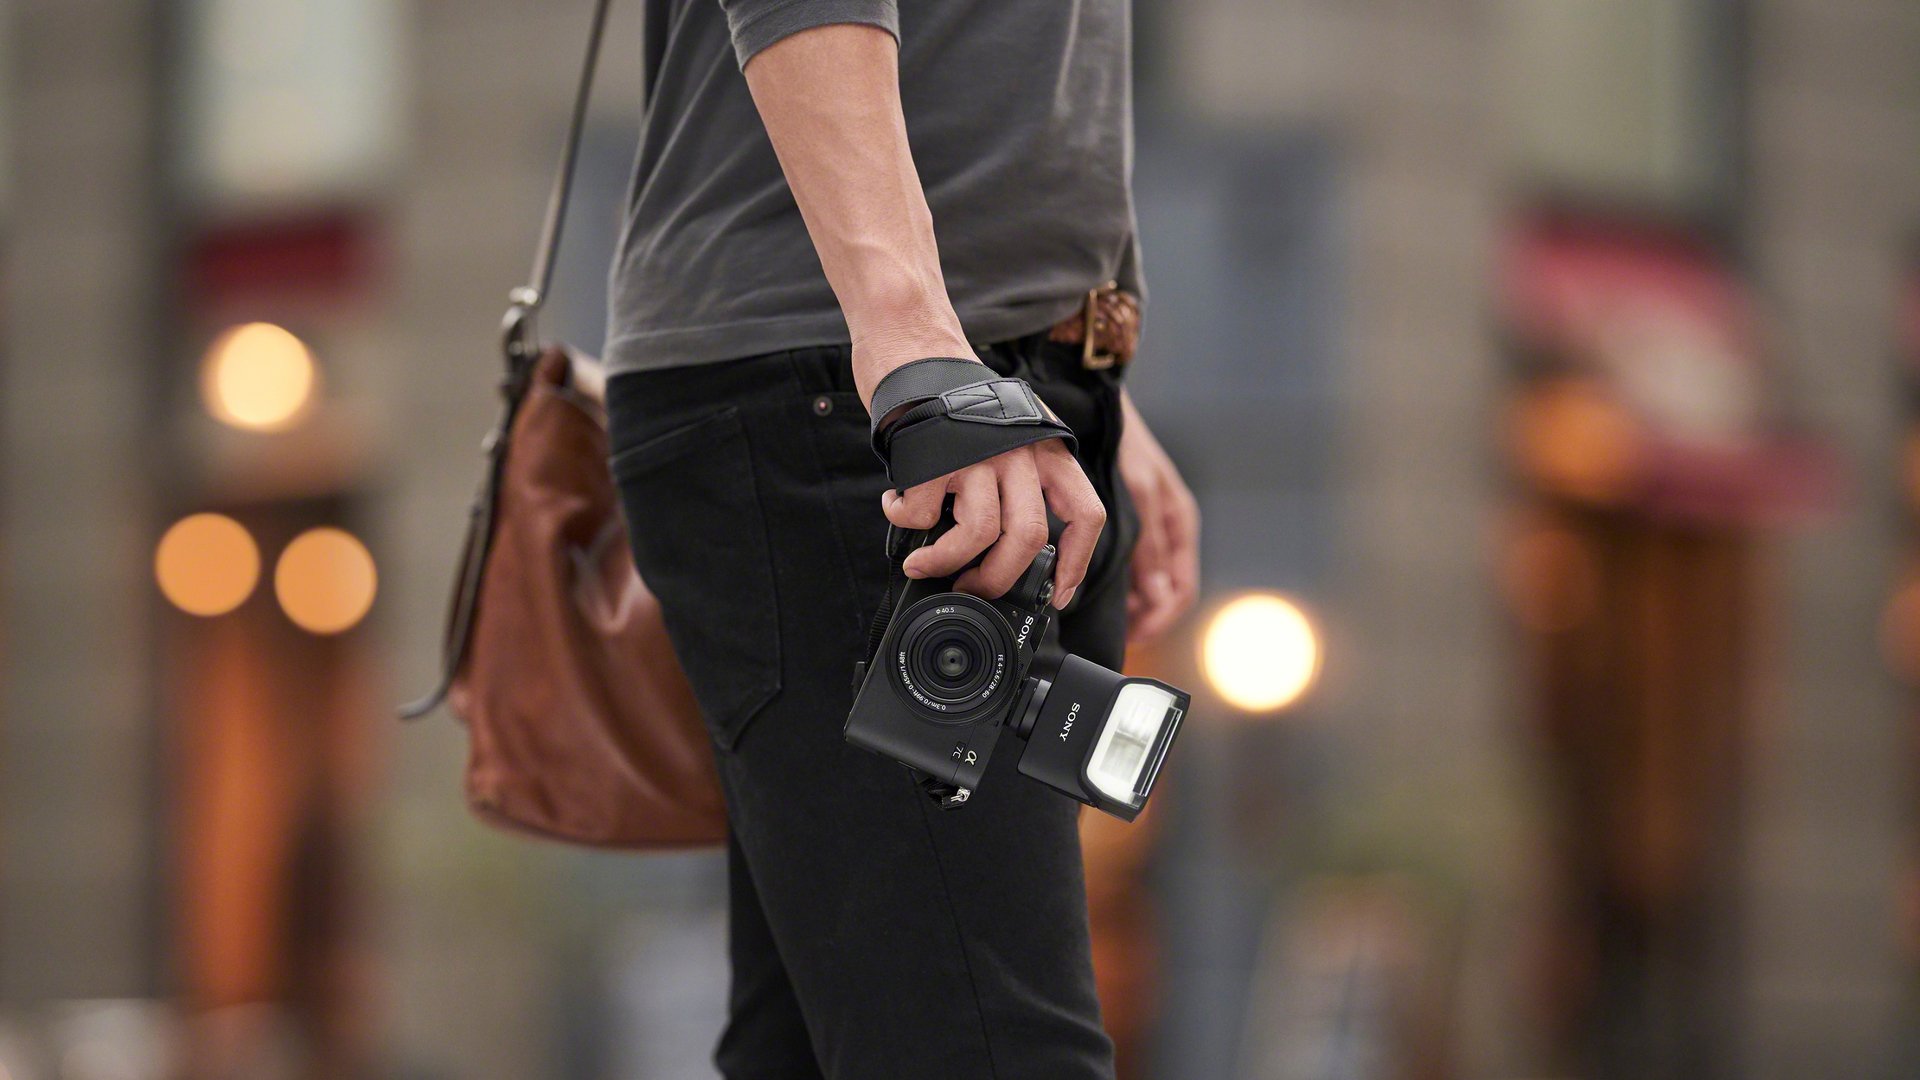 Cập nhật firmware Sony A7C trang bị khả năng lấy nét theo mắt động vật ở chế độ quay video